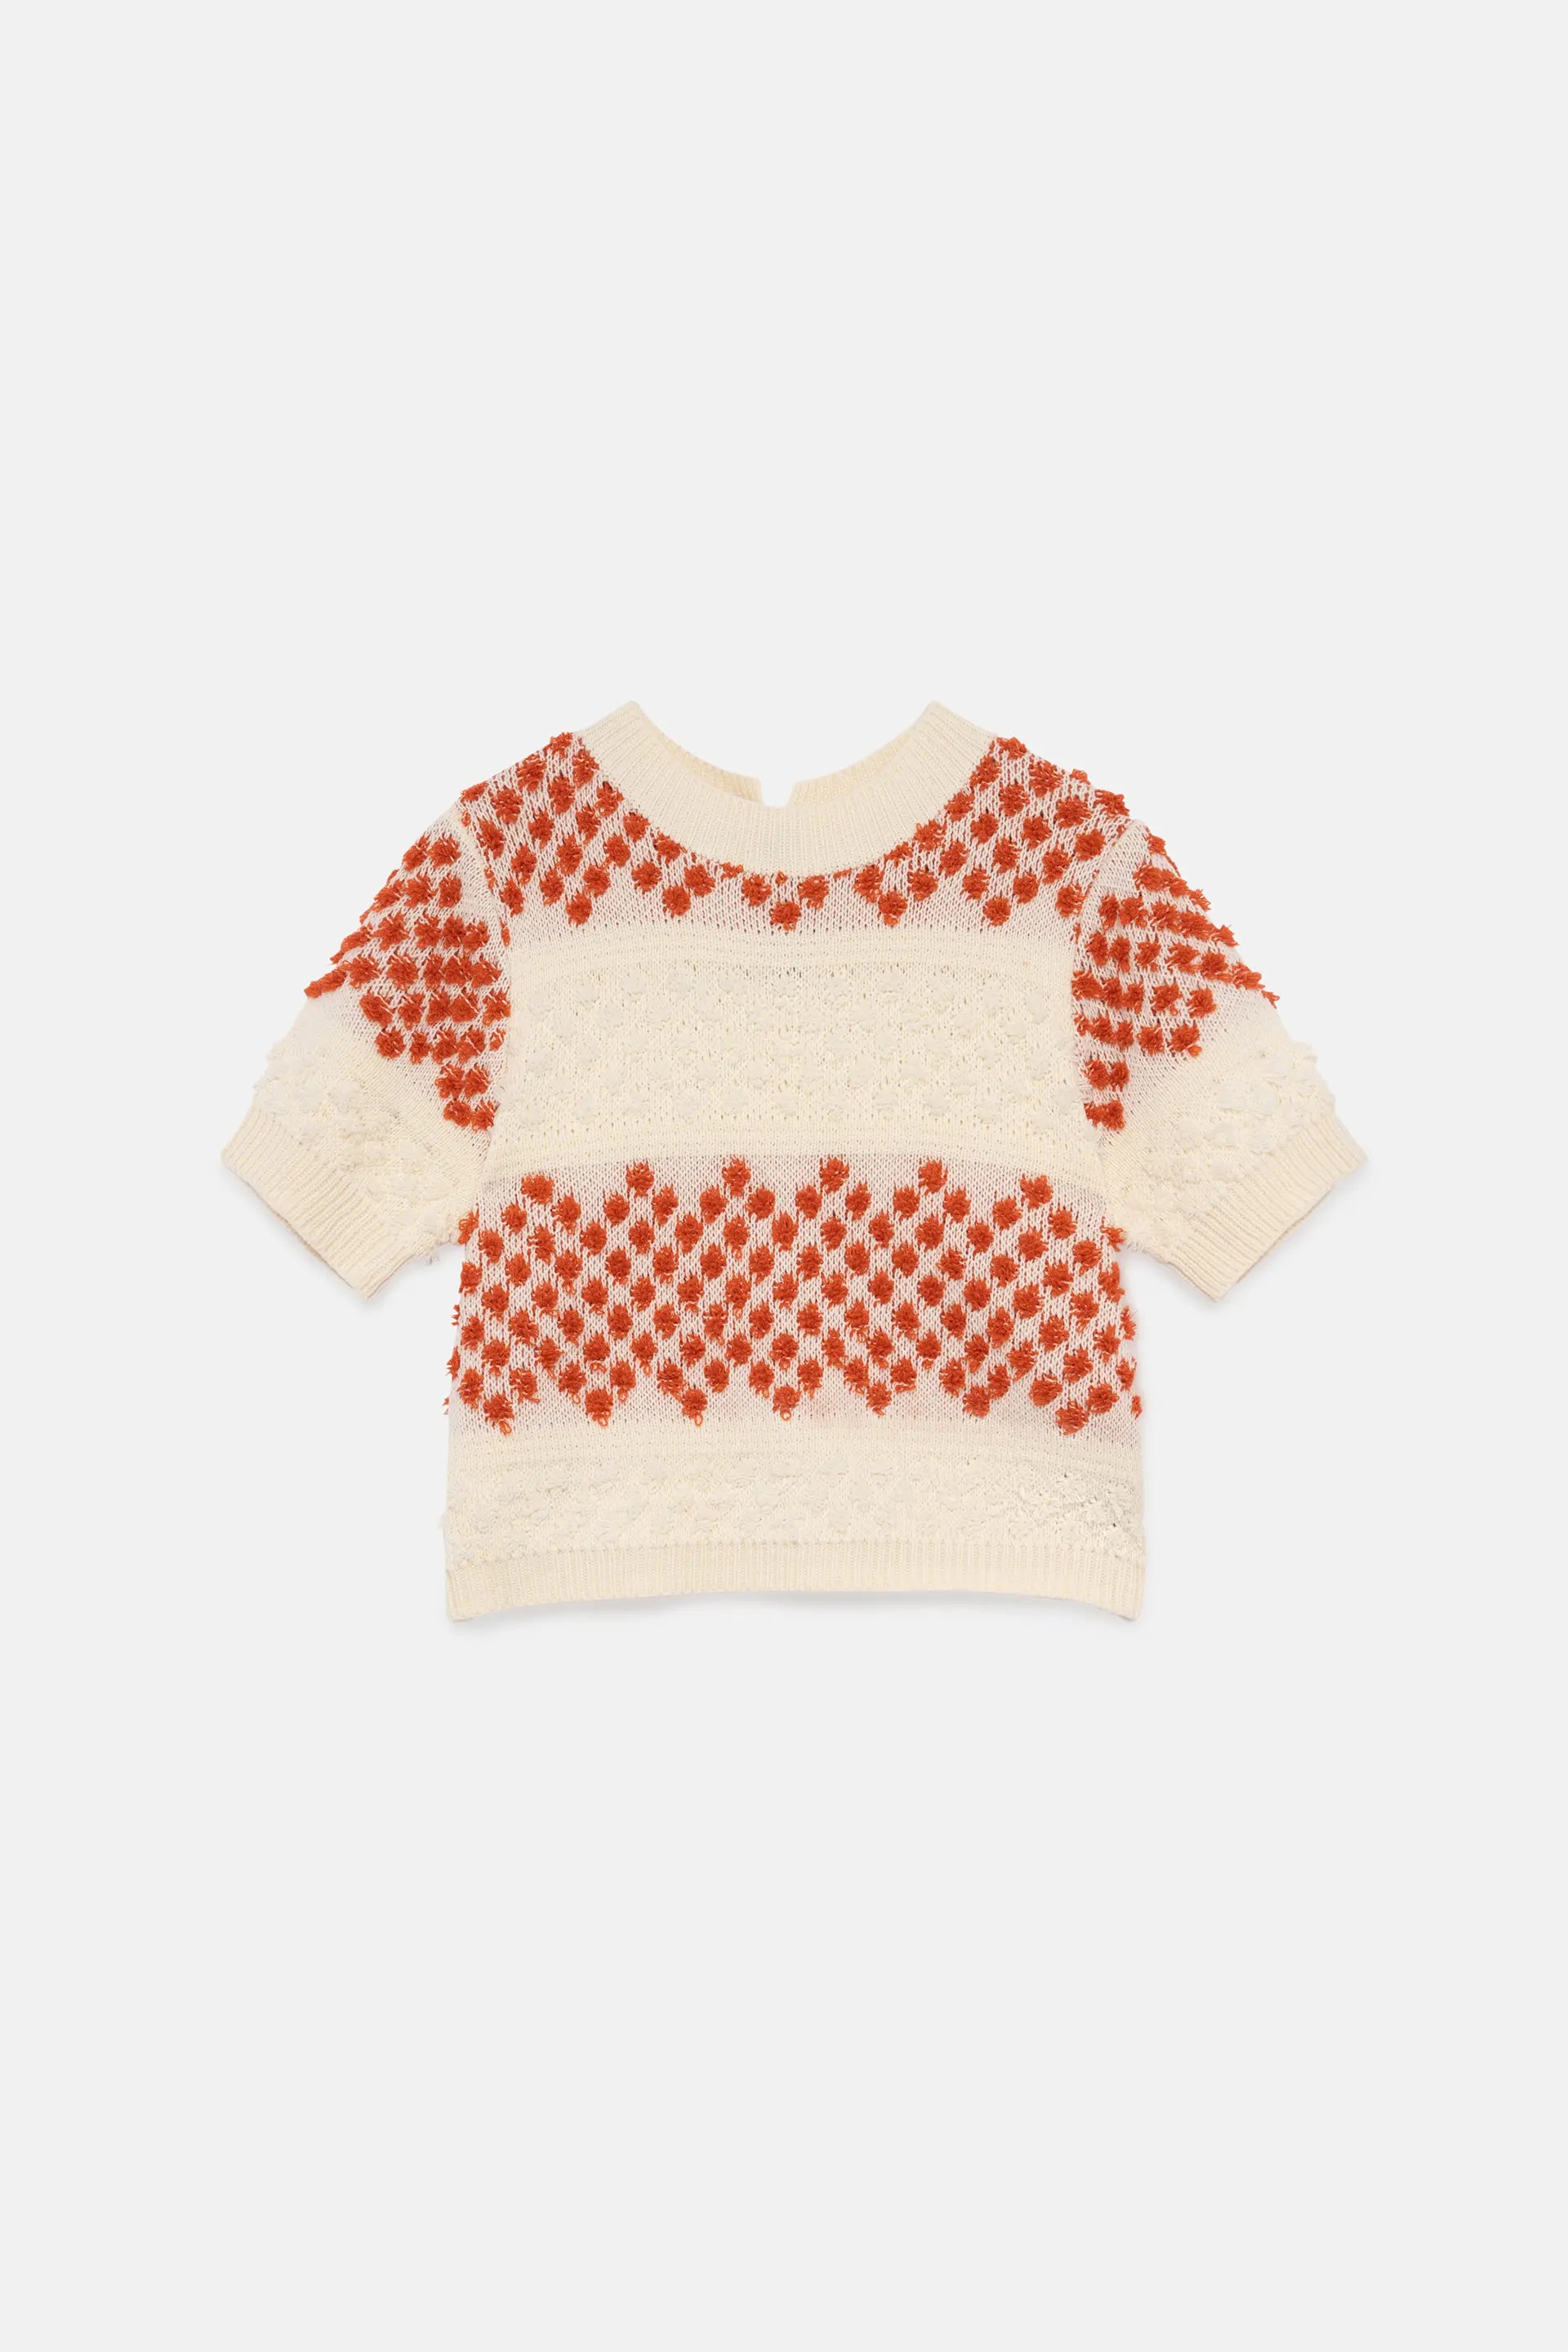 Wild Pony Orange short sleeve knitted sweater